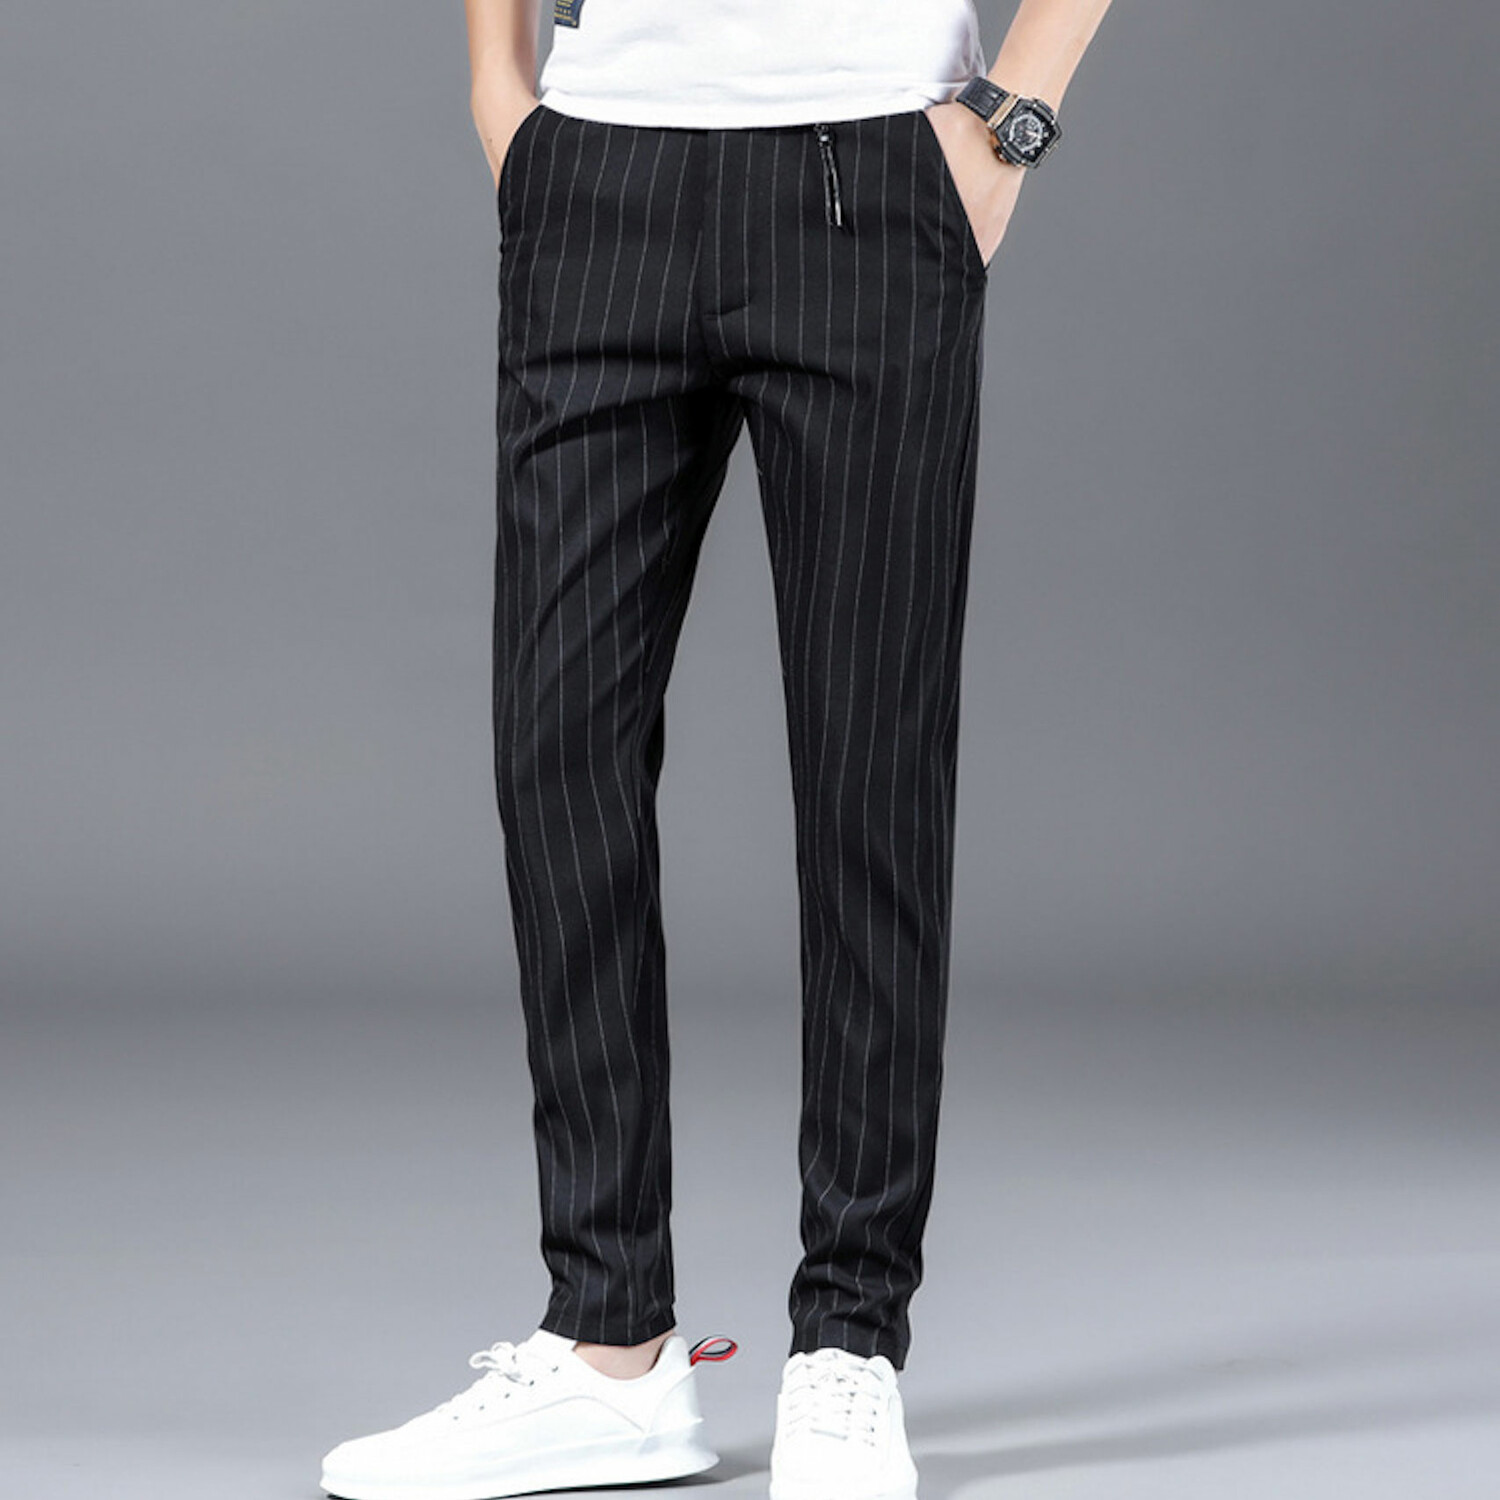 Striped Slim Fit Pants // Black (34) - Amedeo Exclusive Slim Fit Pants ...